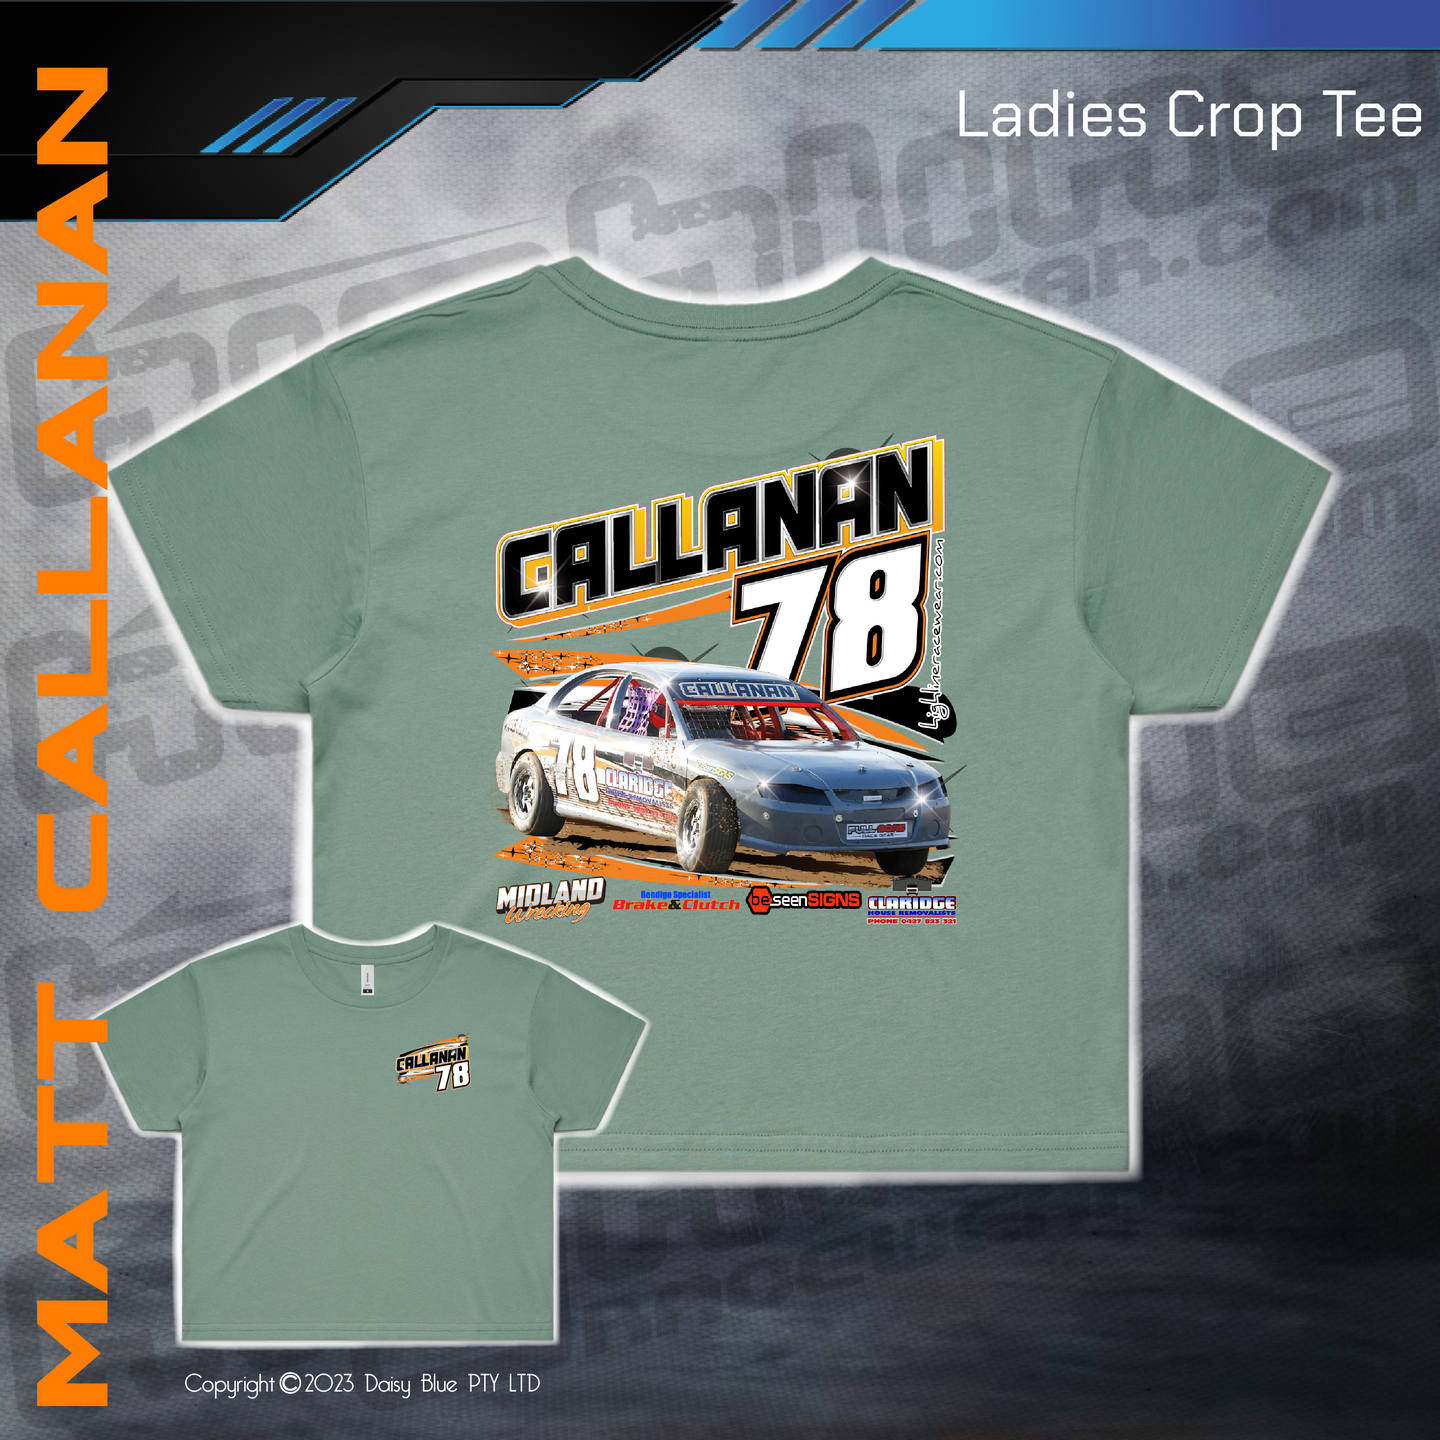 Ladies Crop Tee - Matthew Callanan